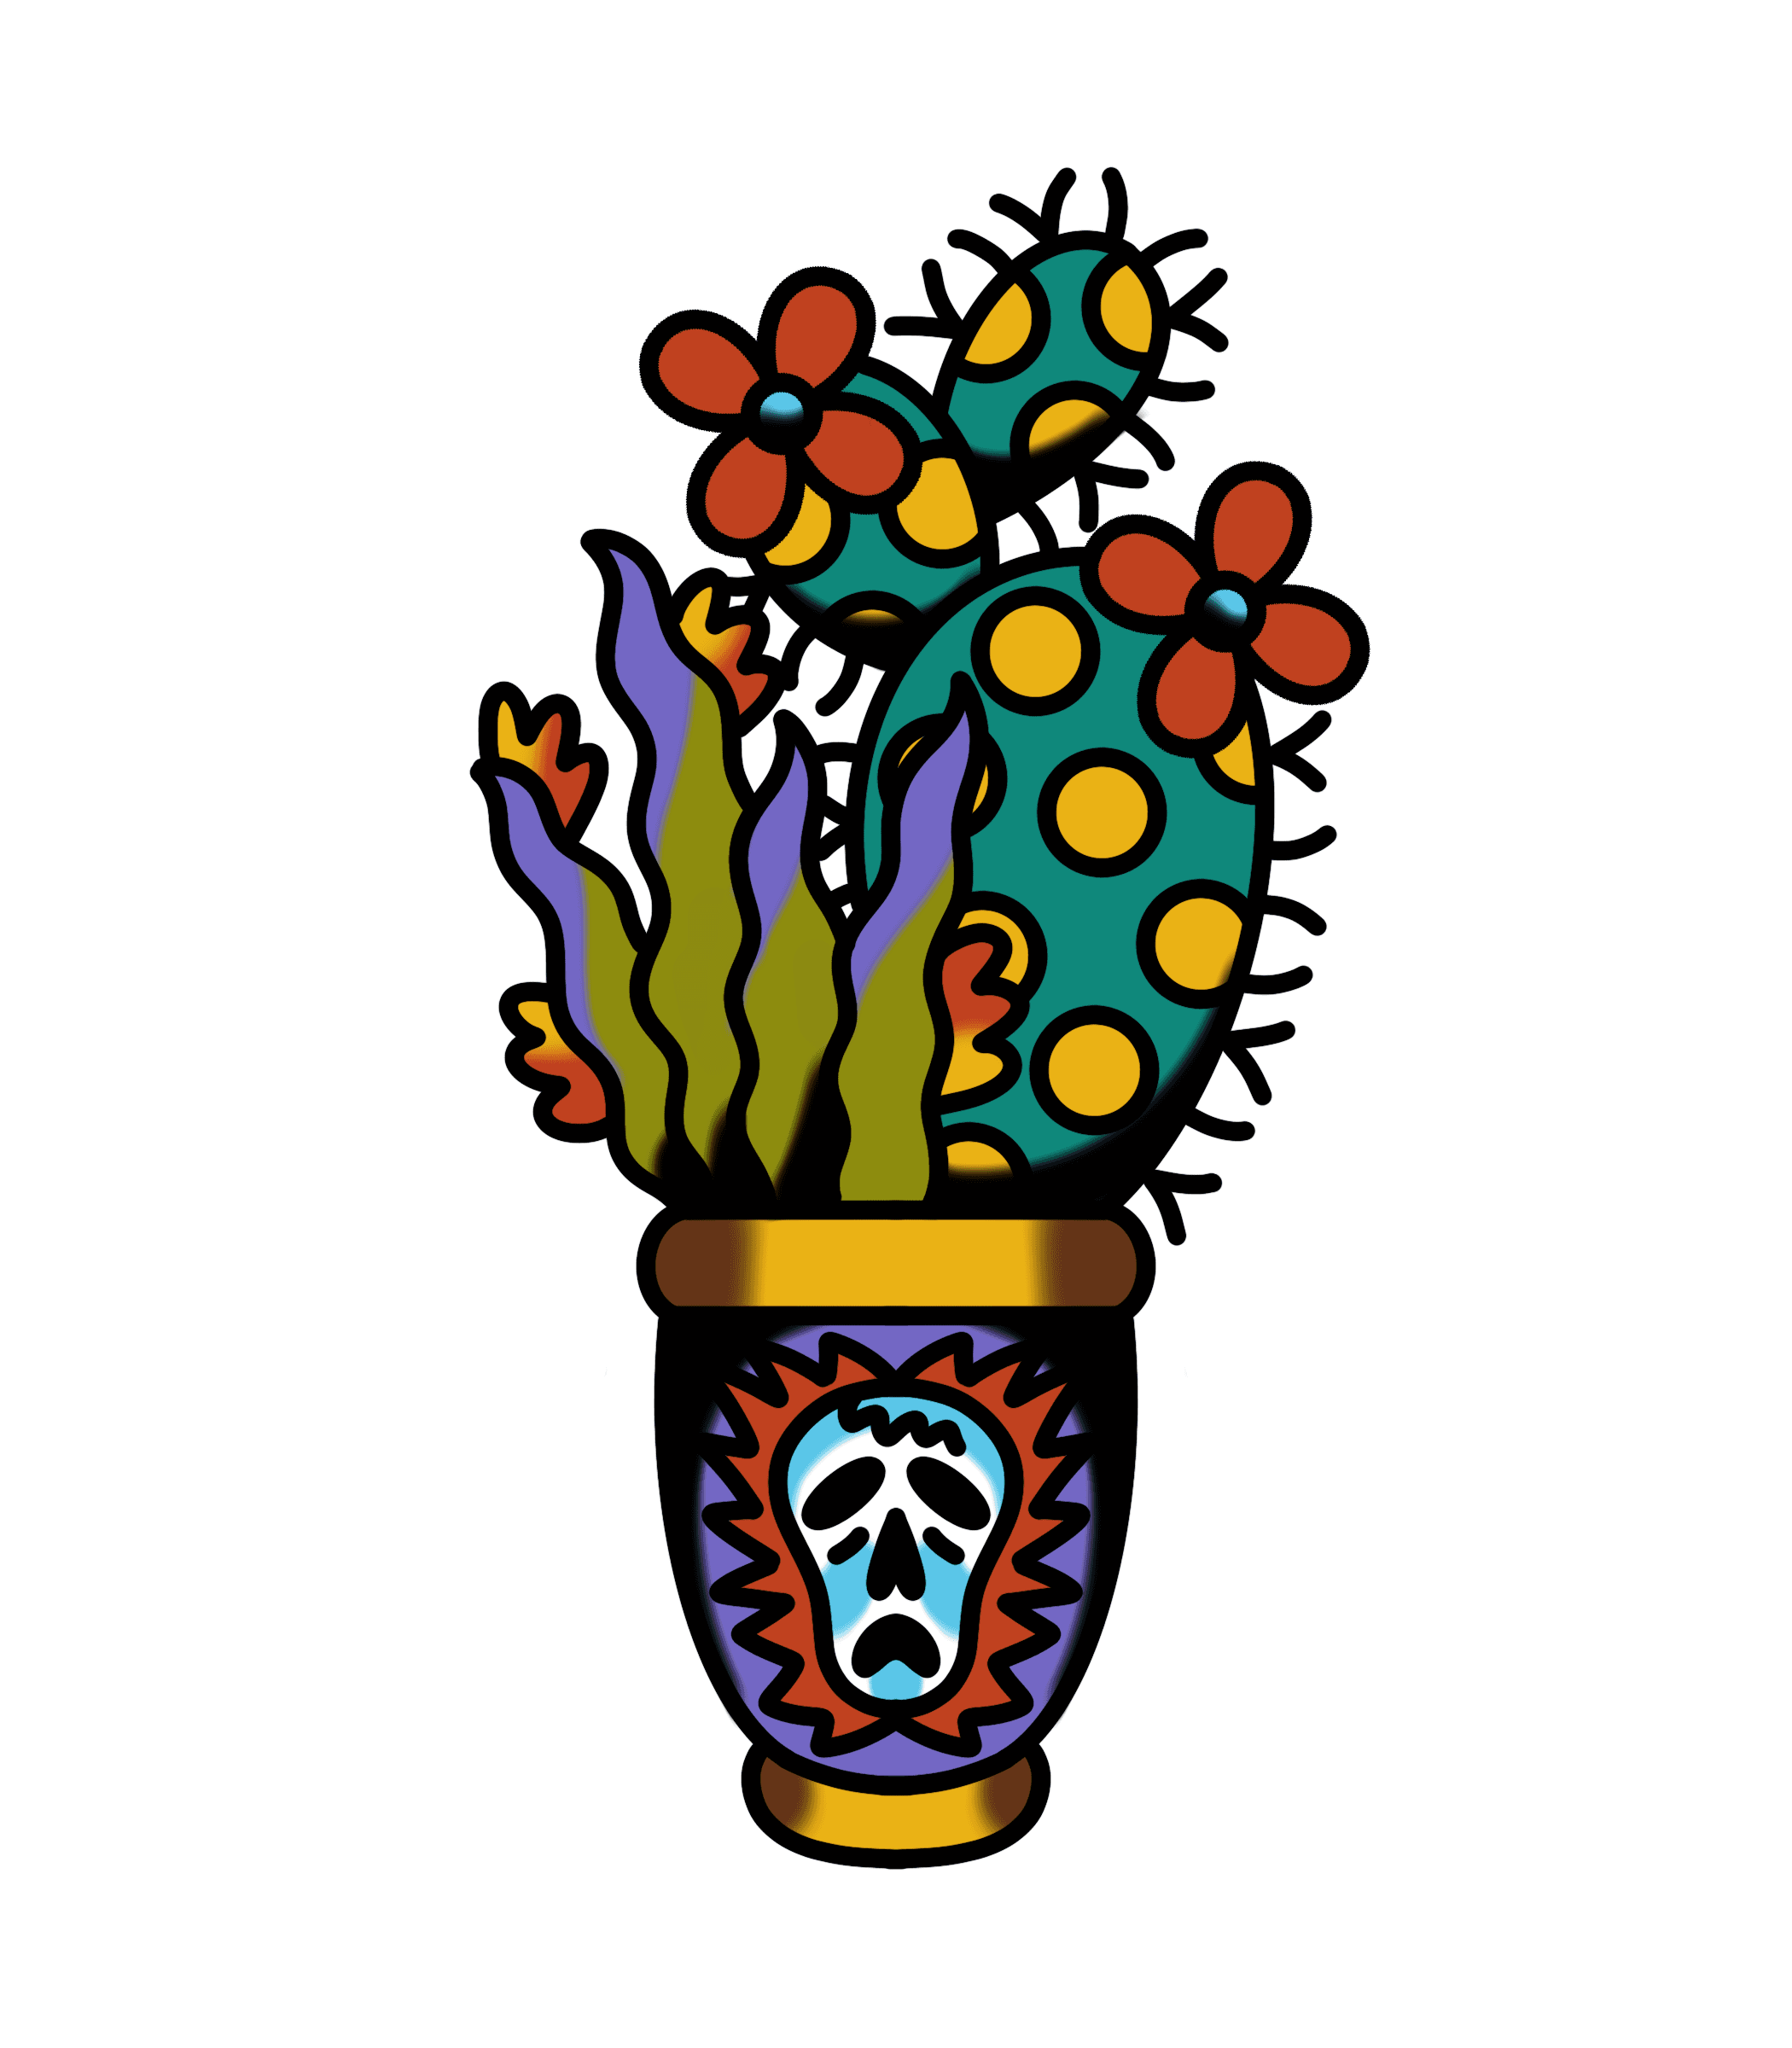 Tattoo design titled: Cactus x Skull